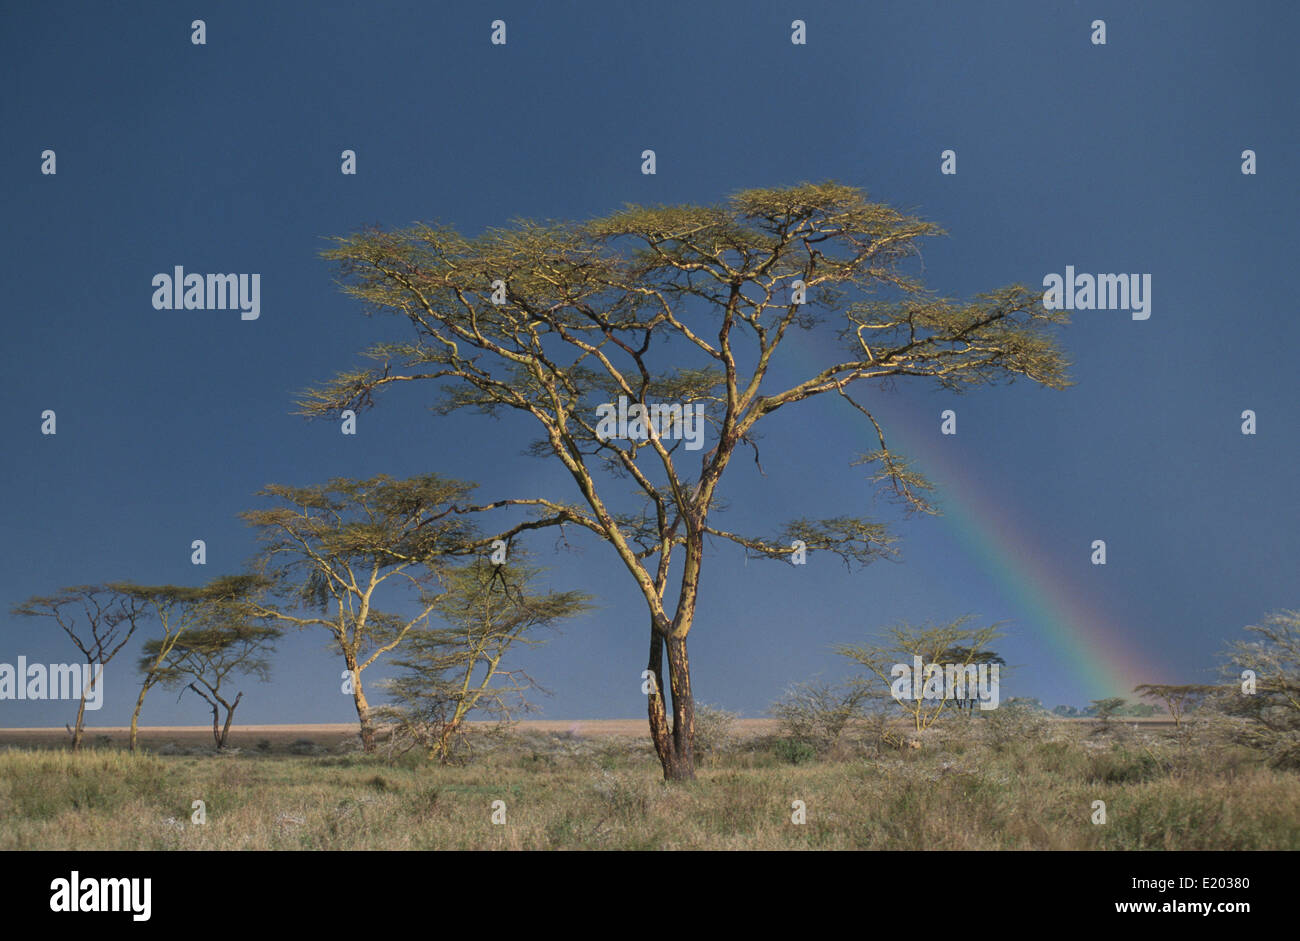 Acacia trees (Vachellia xanthophloea) and rainbow, Serengeti, Tanzania Stock Photo